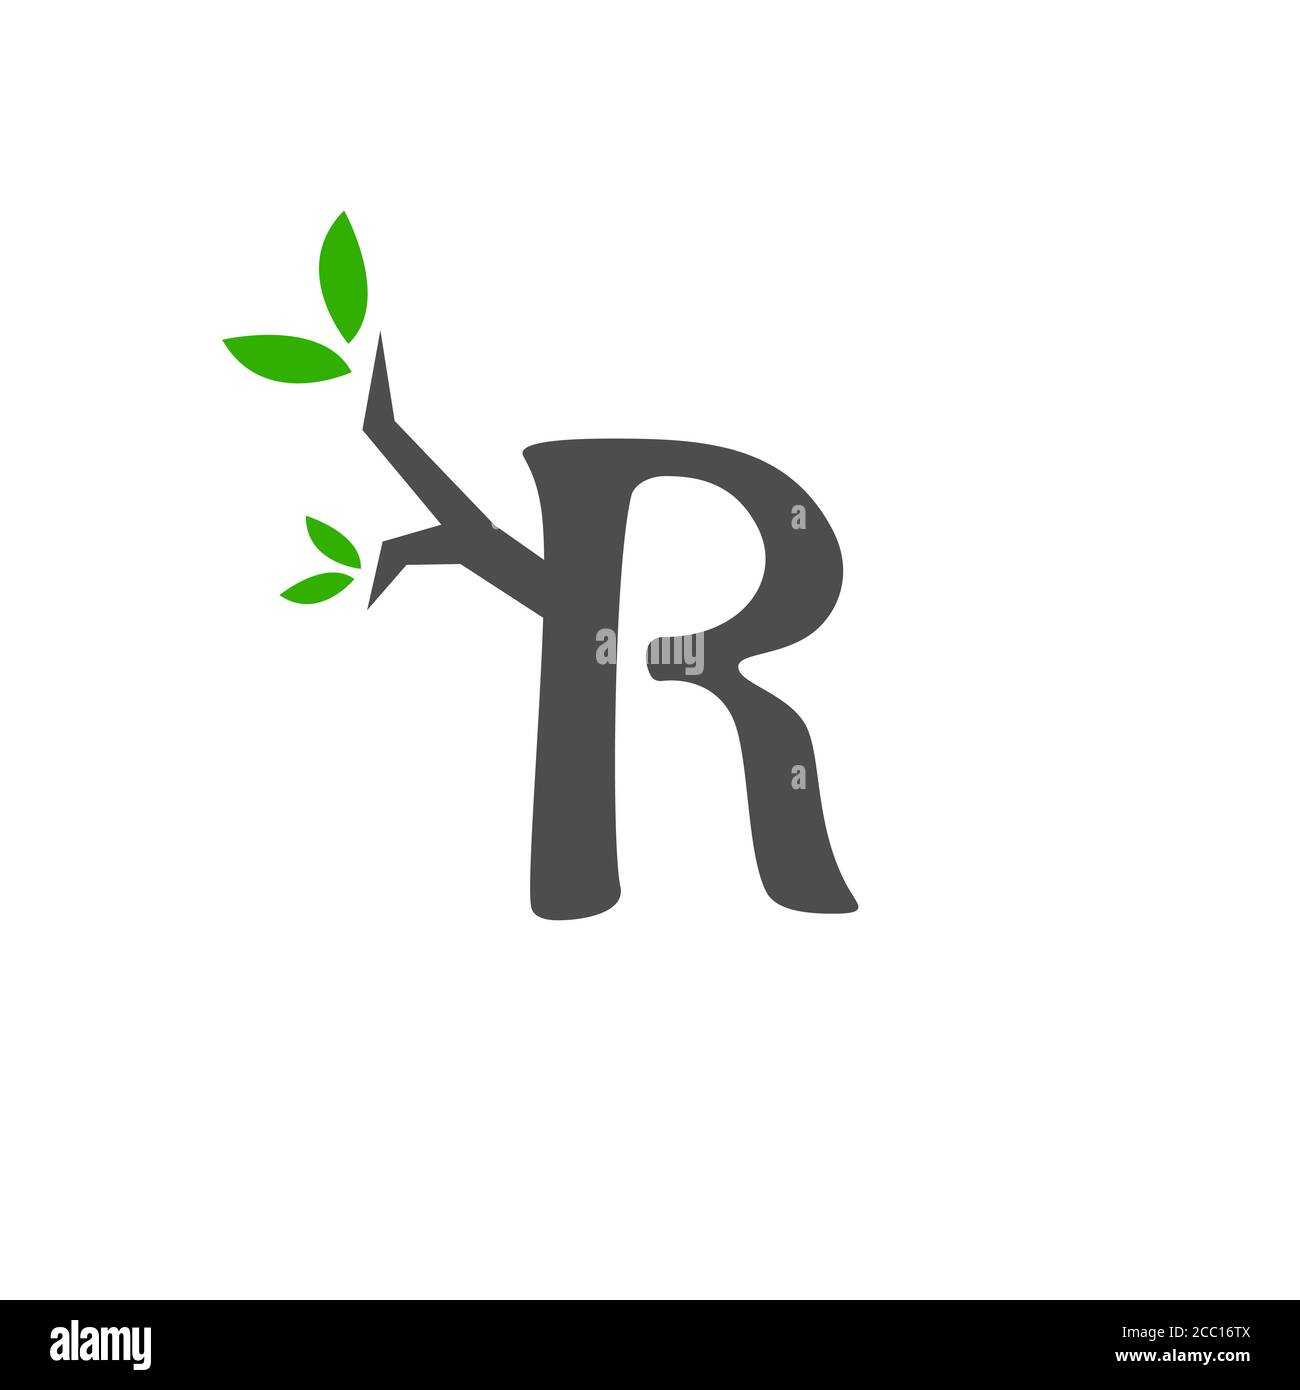 R letter symbol design vector illustration with trunk and leaf ...